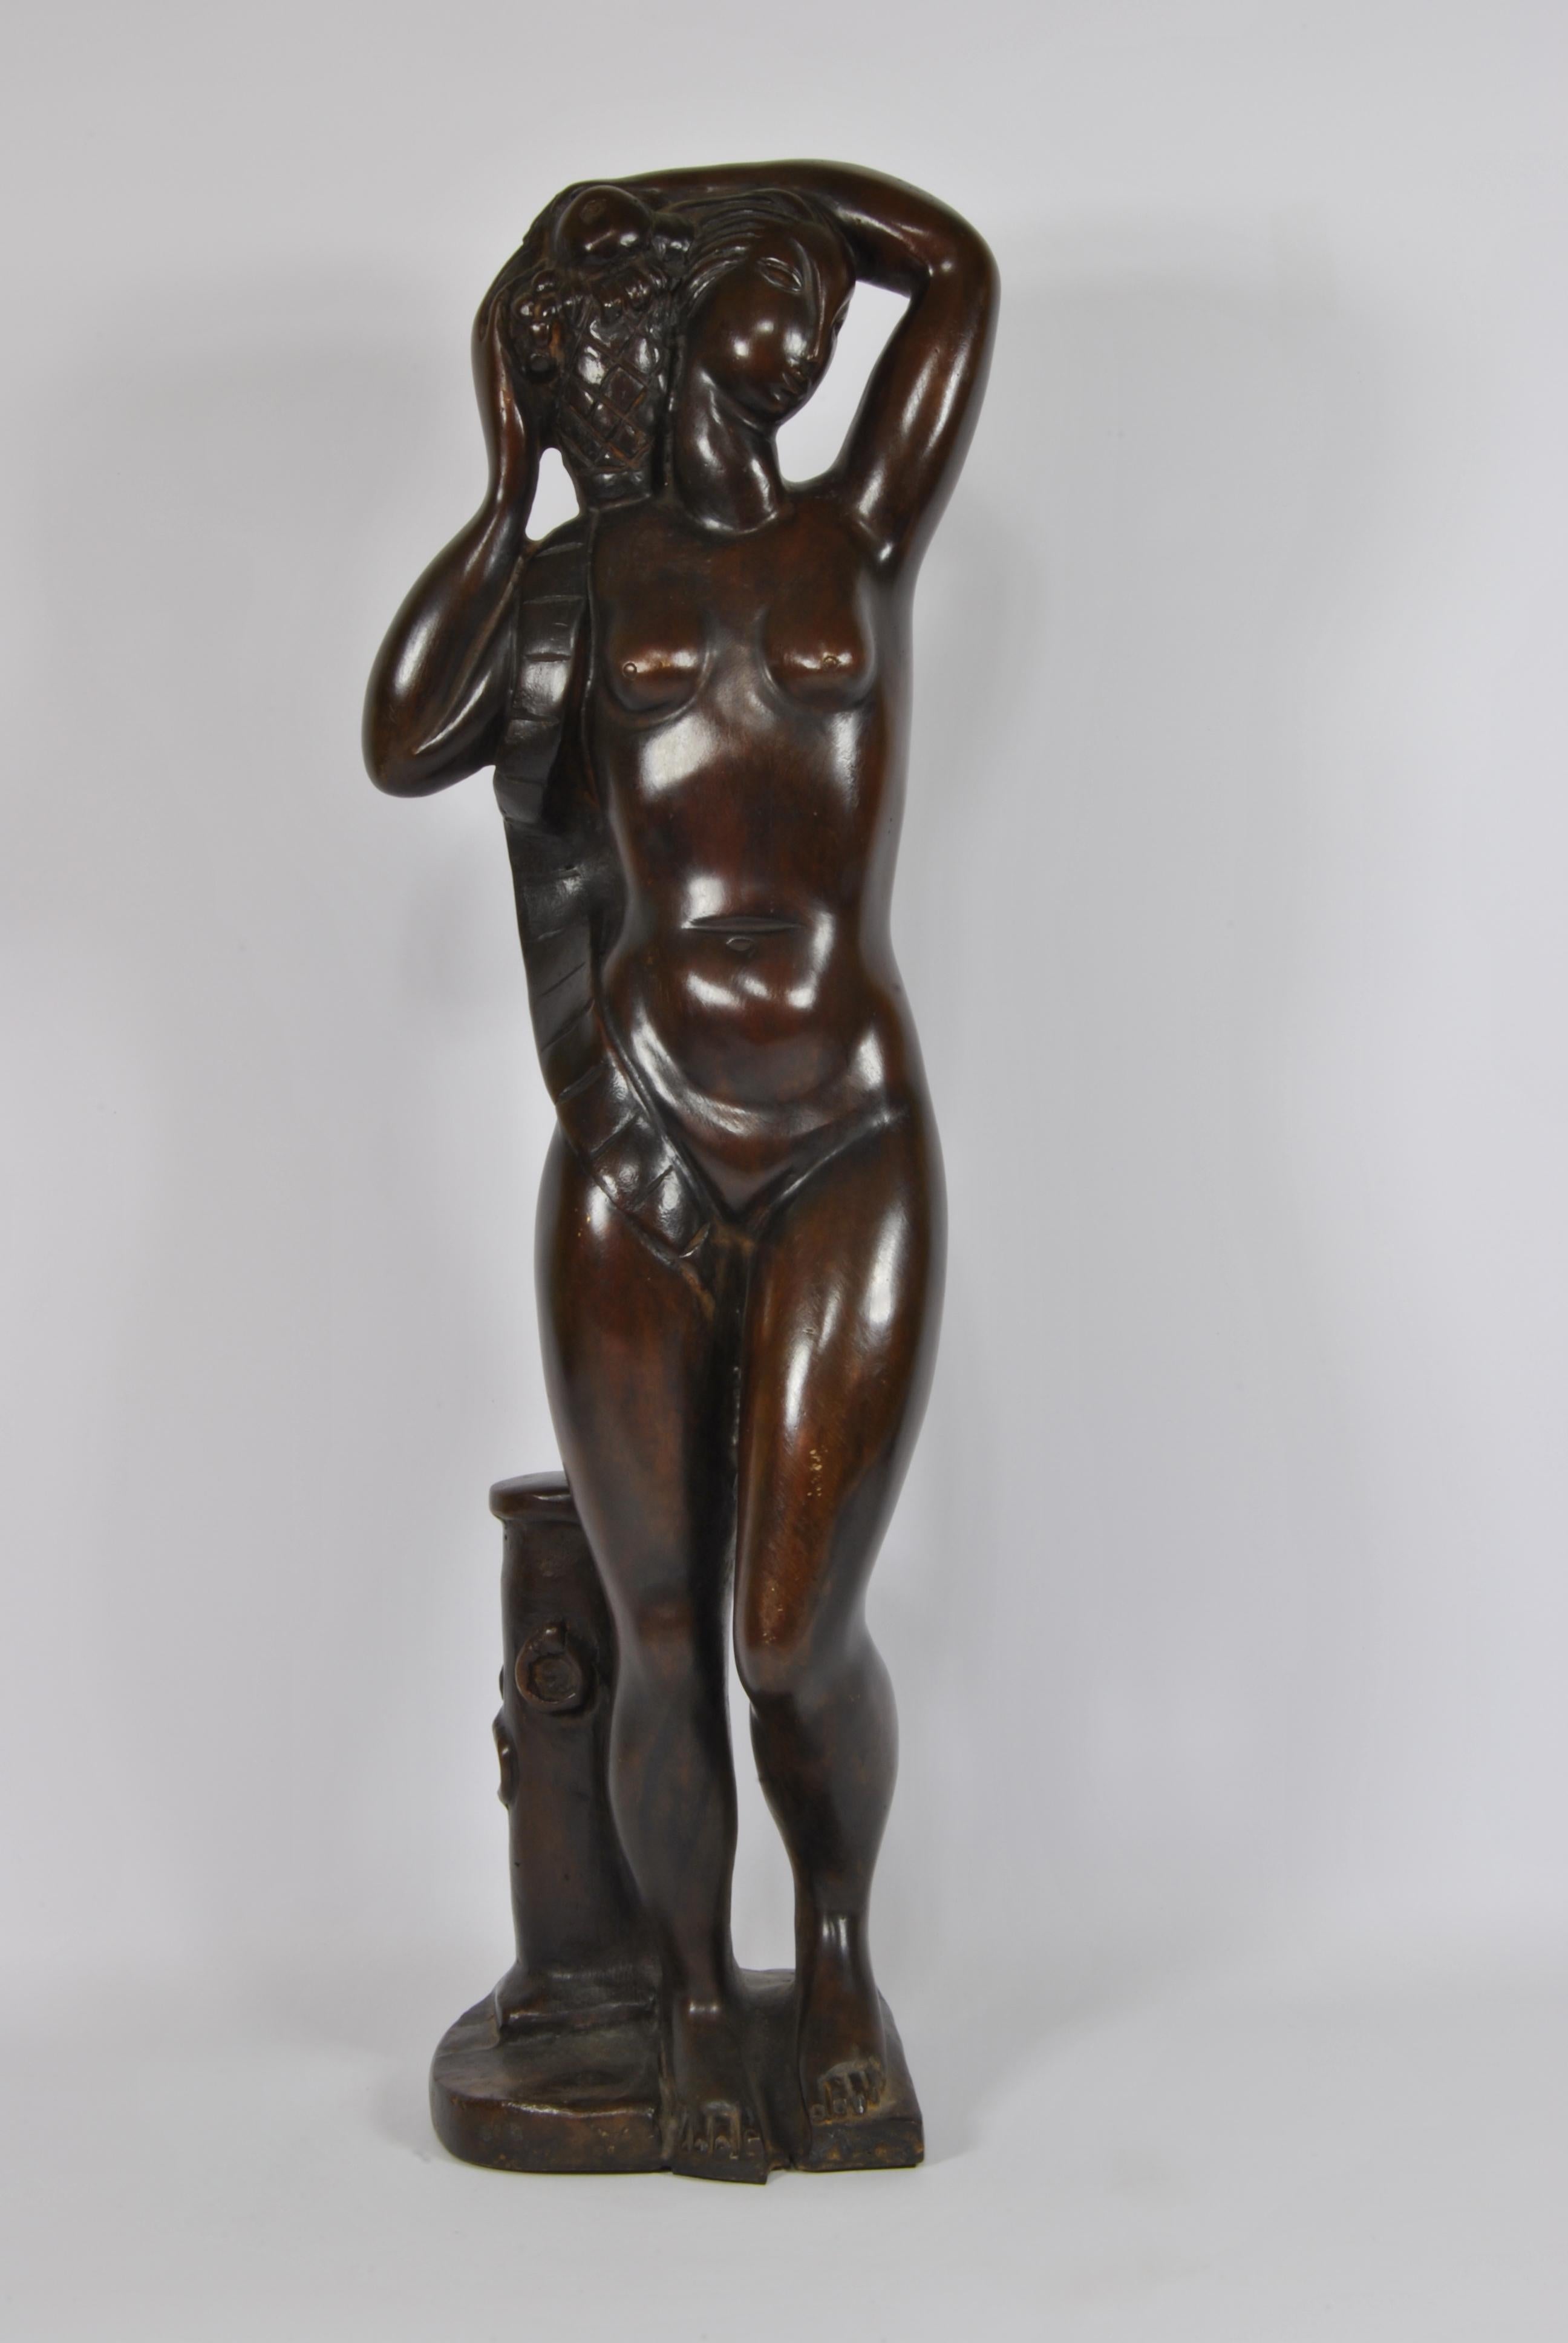 Art-Deco-Skulptur ganz aus Bronze, signiert vom Bildhauer Celano France 1940.
Die Skulptur trägt auf dem Sockel die eingravierte Signatur 